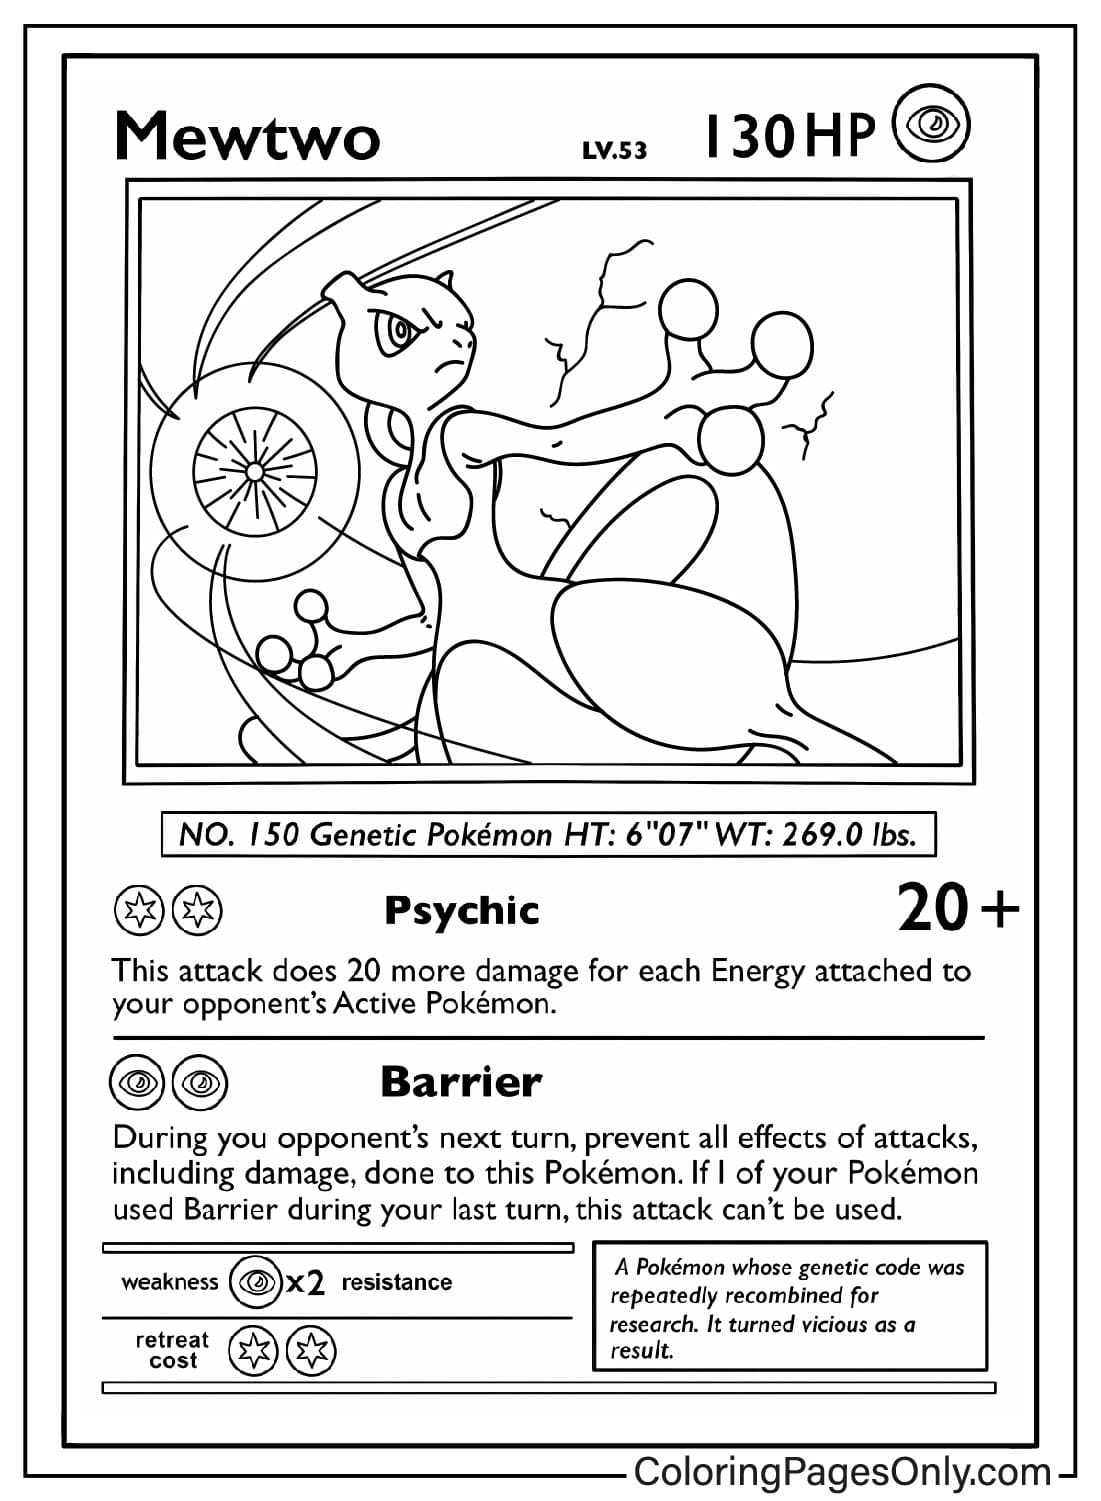 Immagini di carte Pokemon Mewtwo da colorare dalla carta Pokemon